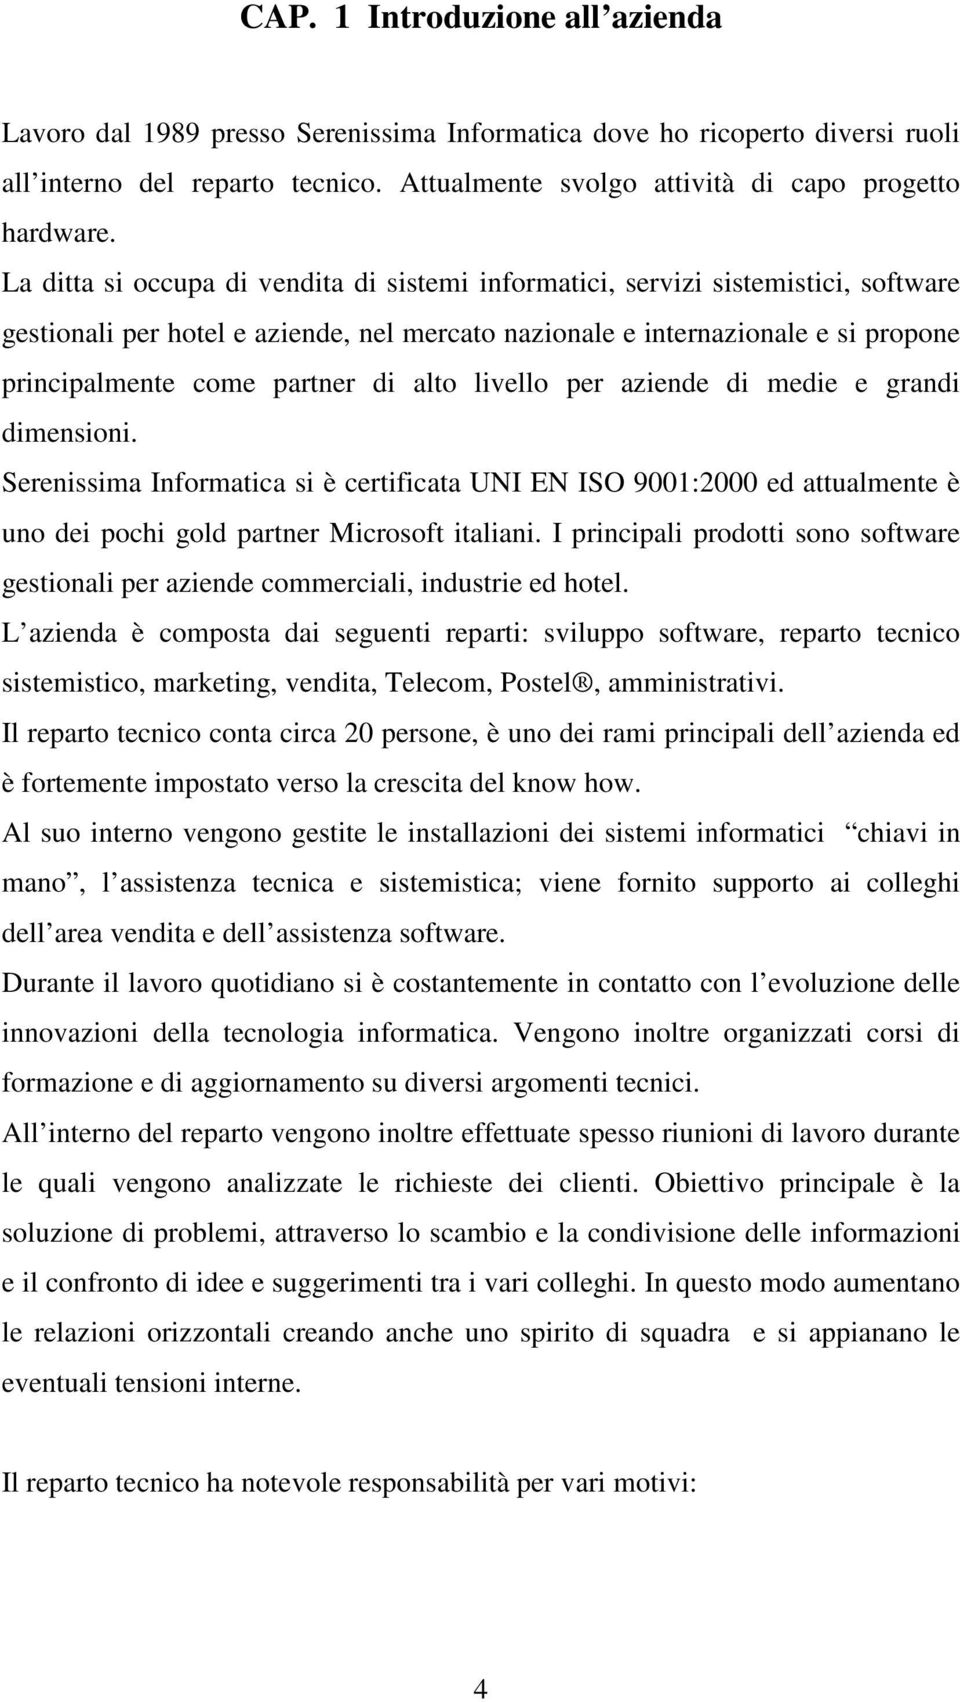 alto livello per aziende di medie e grandi dimensioni. Serenissima Informatica si è certificata UNI EN ISO 9001:2000 ed attualmente è uno dei pochi gold partner Microsoft italiani.